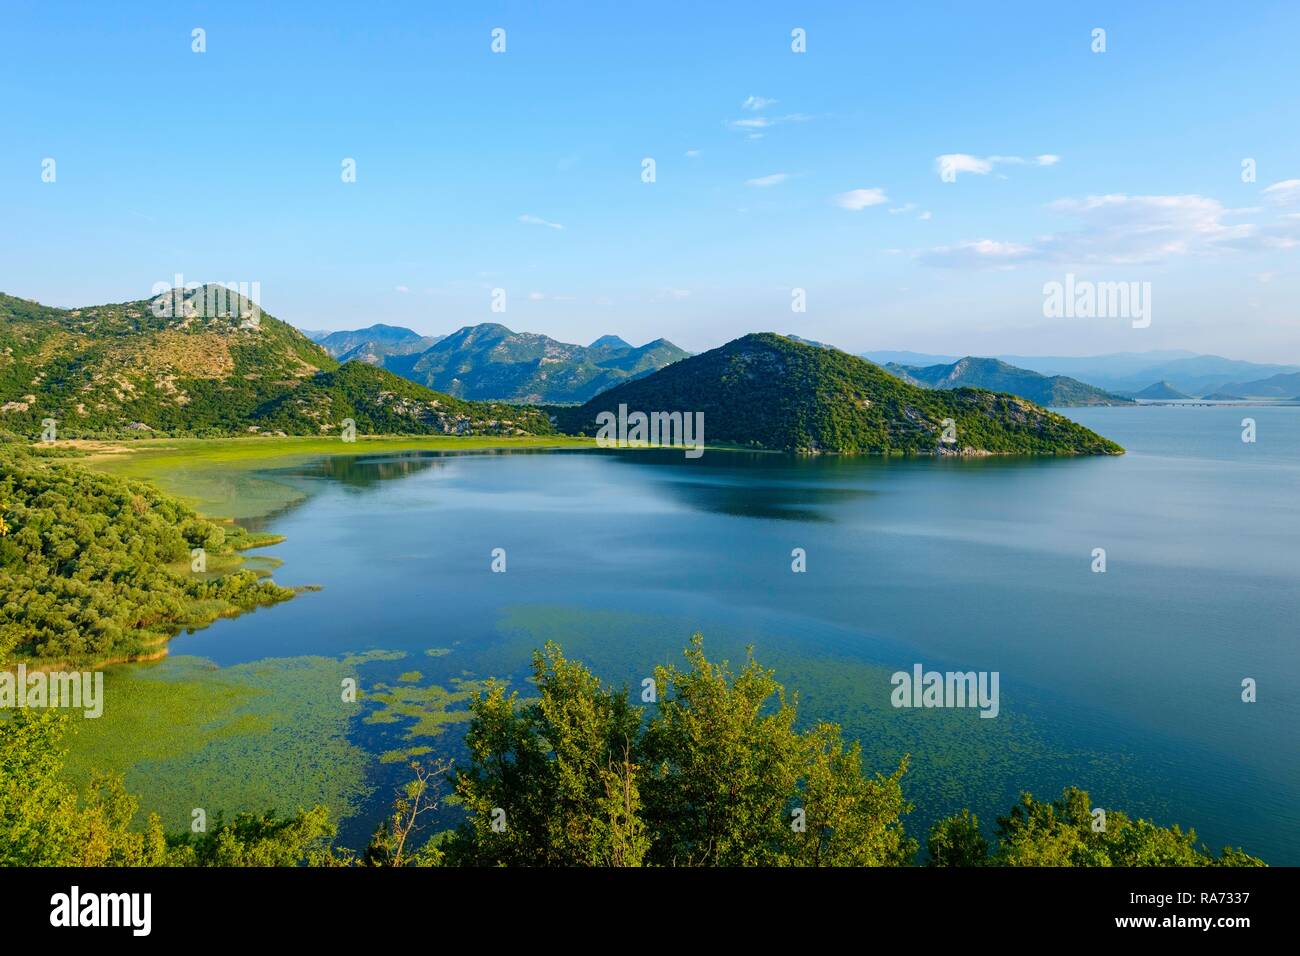 Le lac de Skadar près de Virpazar, Skadarsko Jezero, le parc national du lac de Skadar, près de Bar, Monténégro Banque D'Images